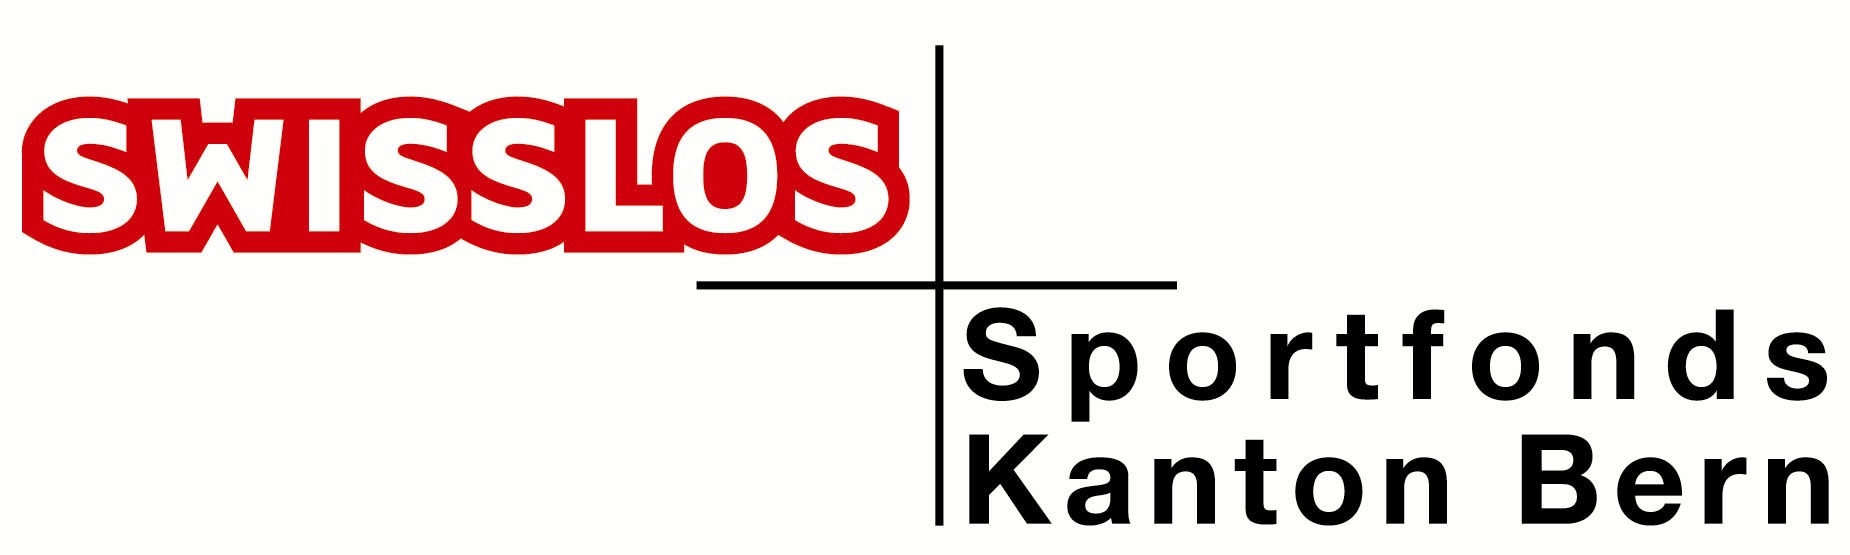 Logo Sportfonds farbig